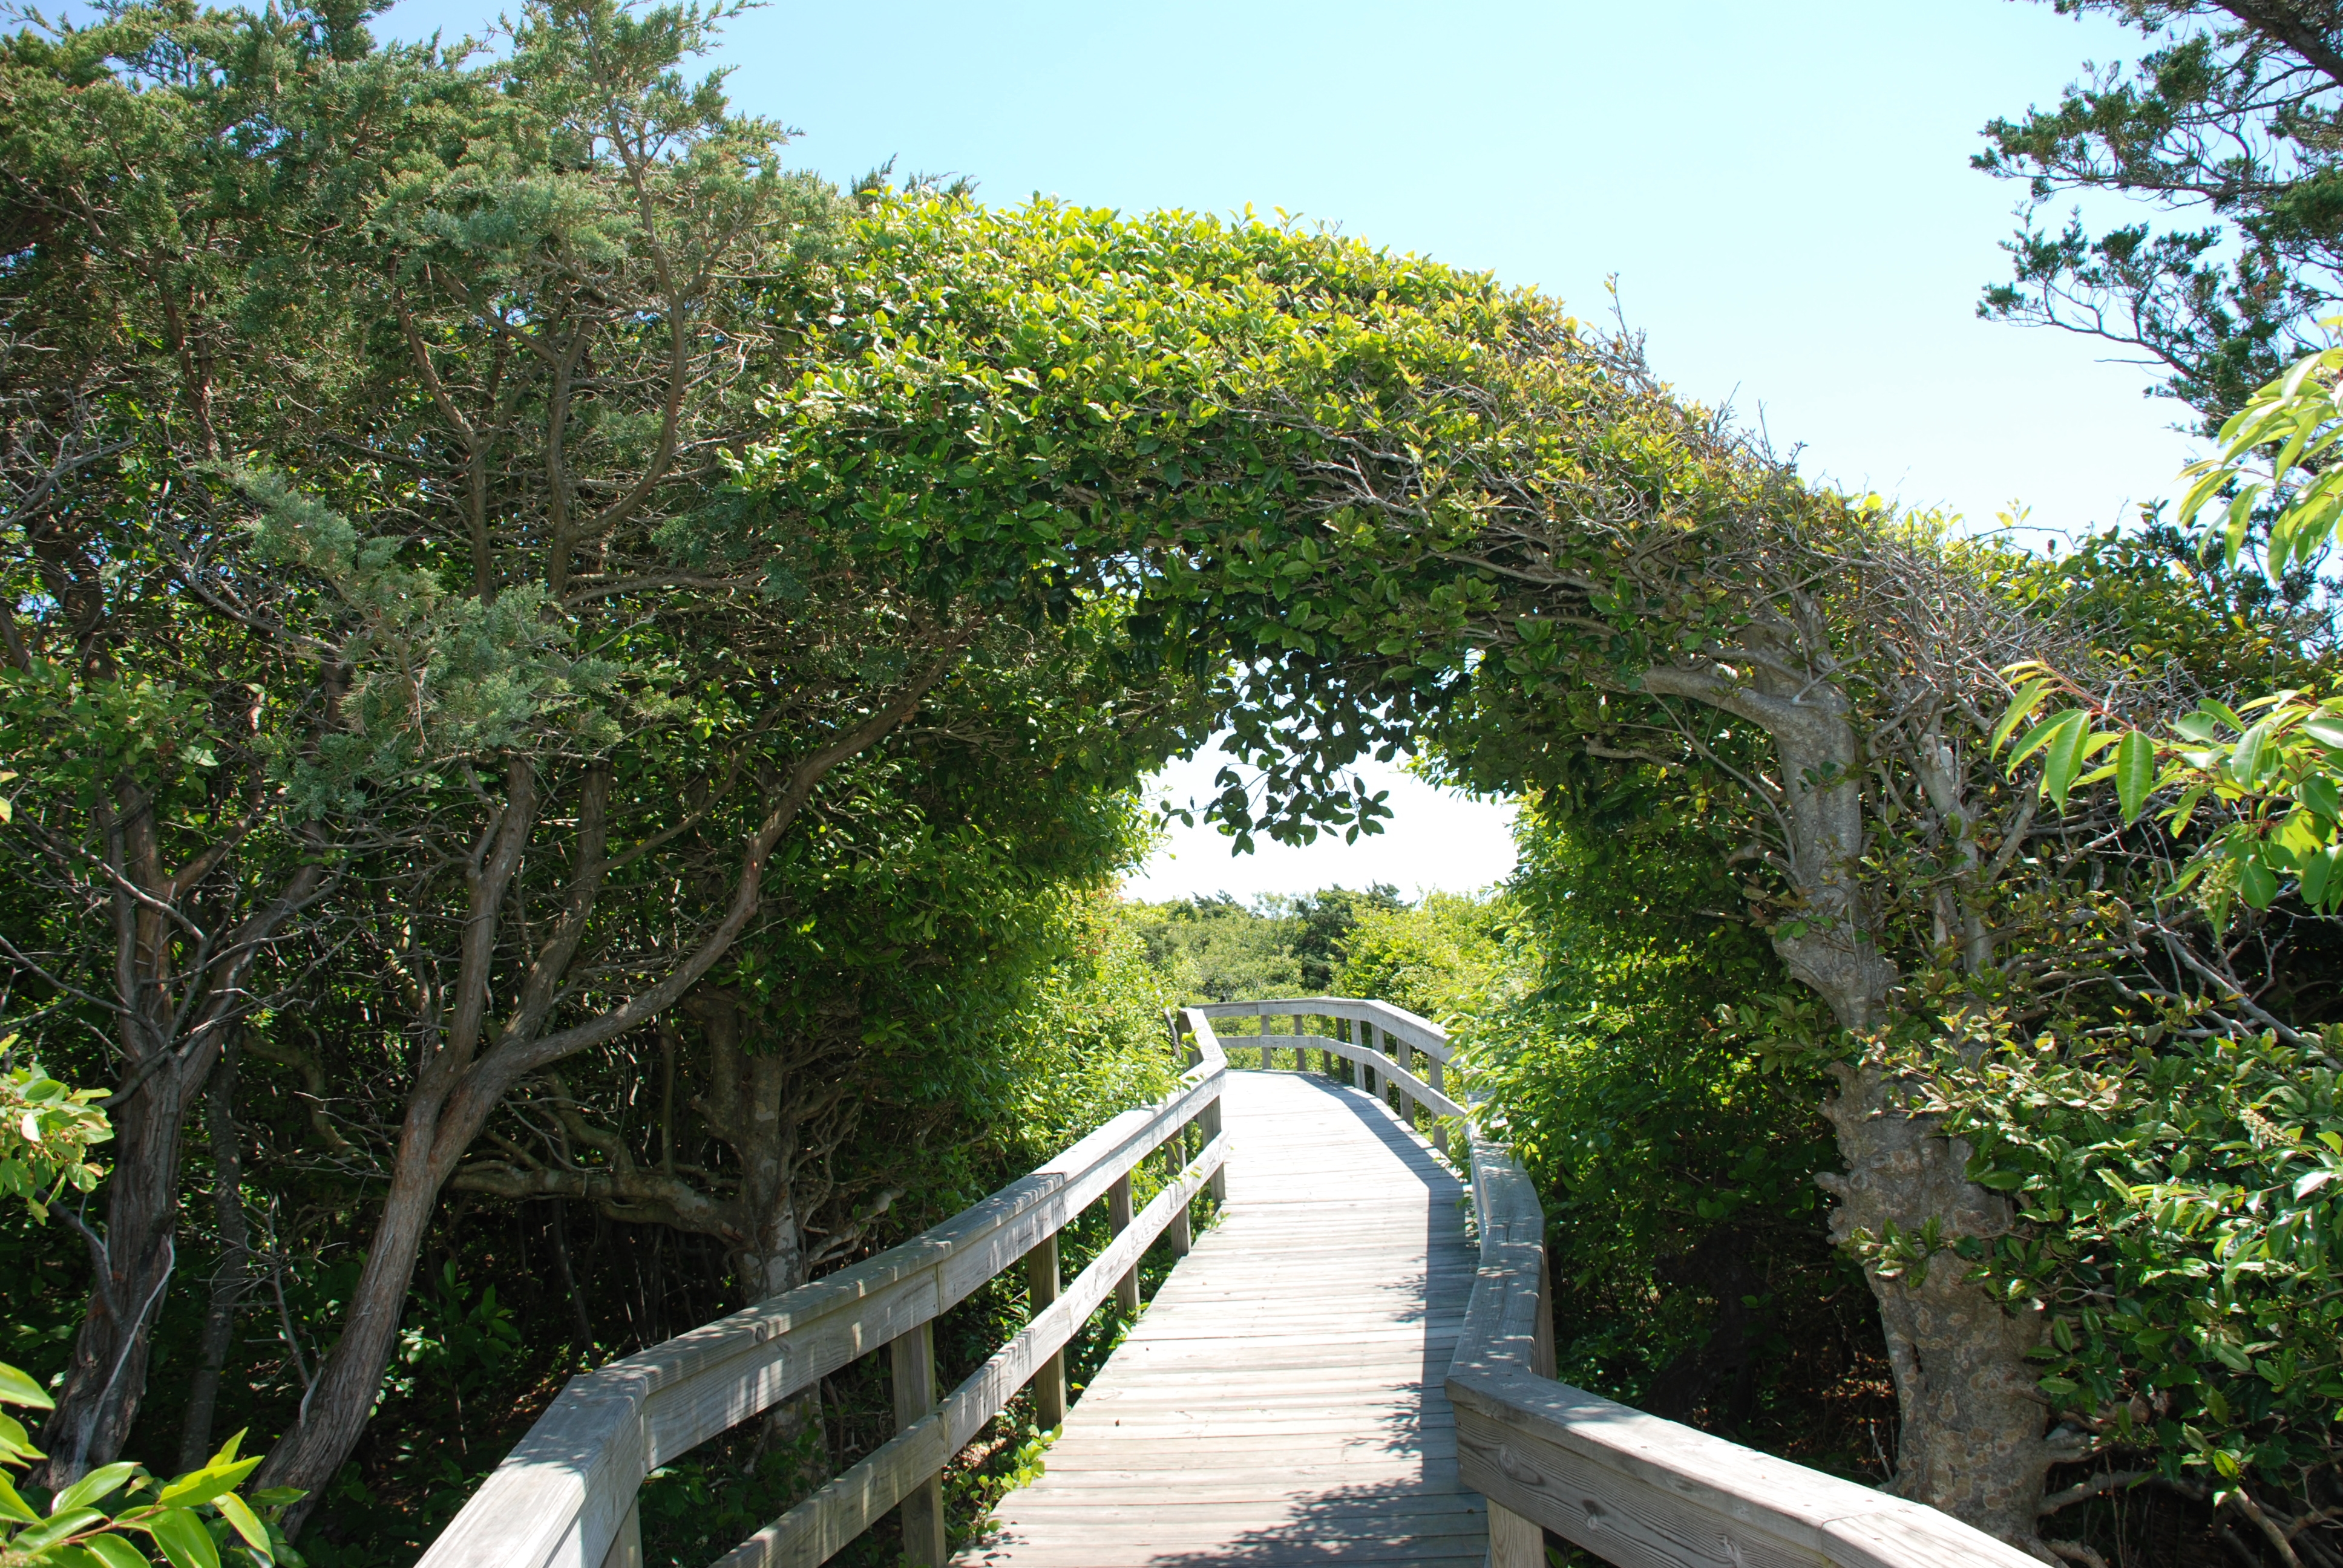 Photo of the Fire Island Sunken Forest boardwalk.